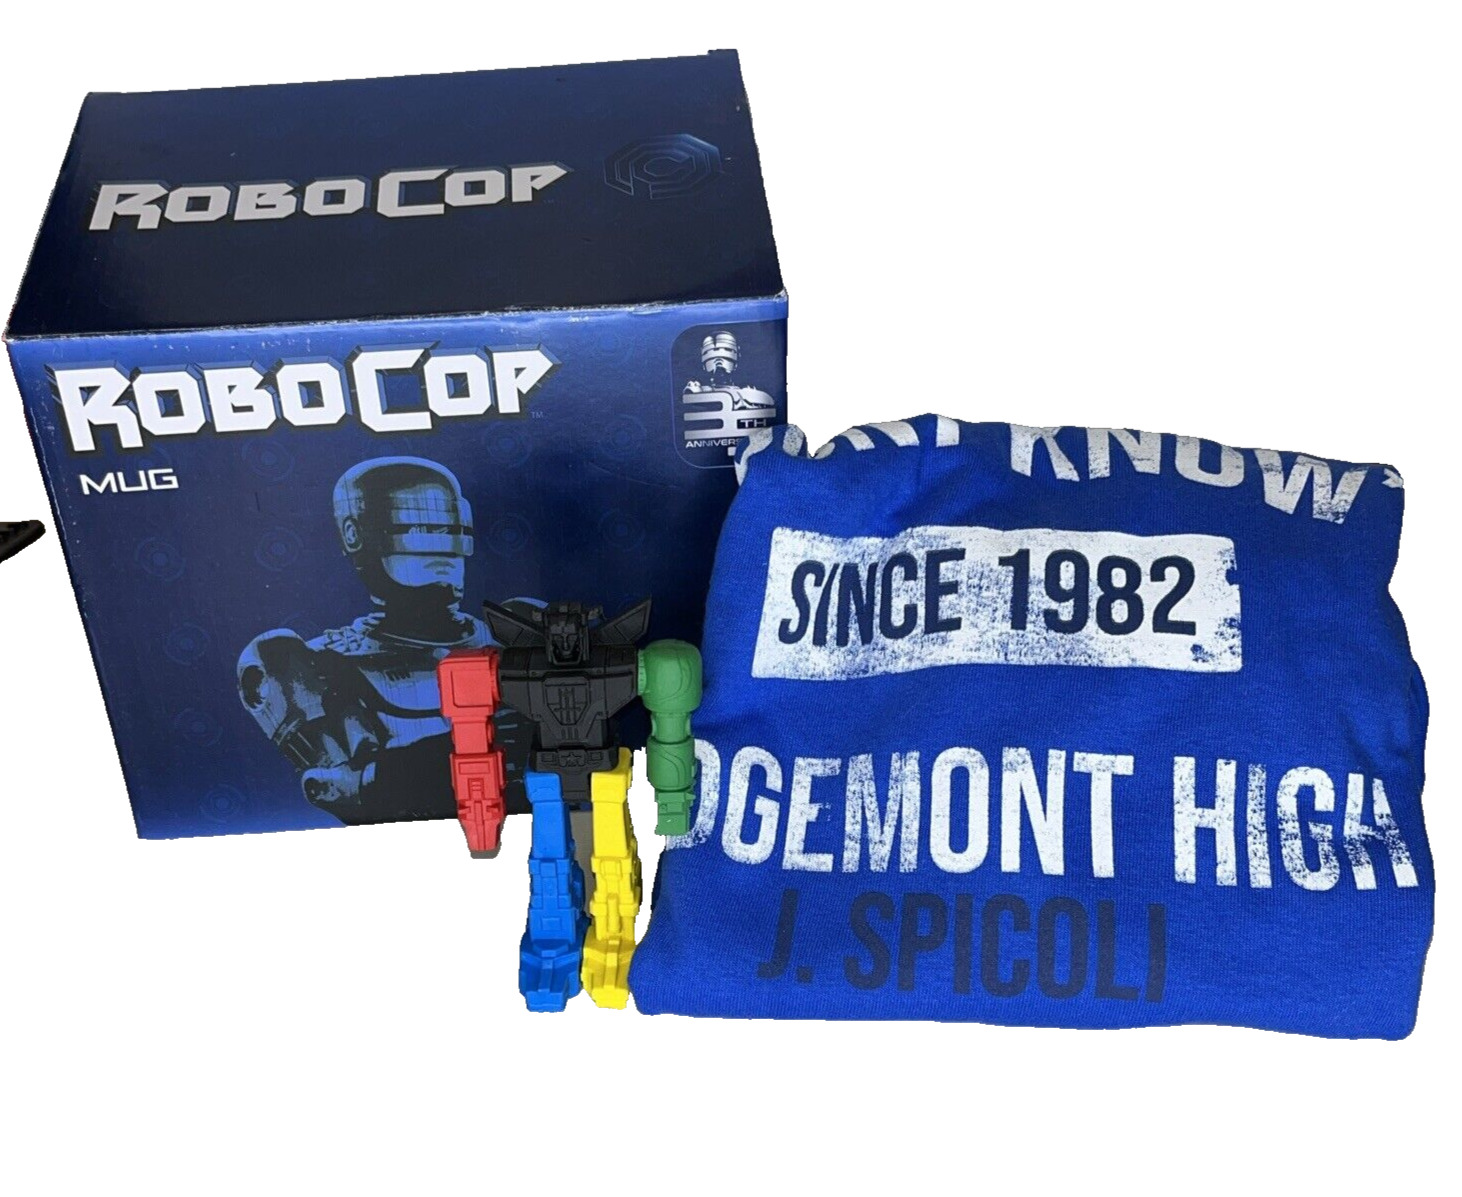 Loot Crate Robo Cop Mug, Voltron Eraser, XL T-shirt Ridgemont High